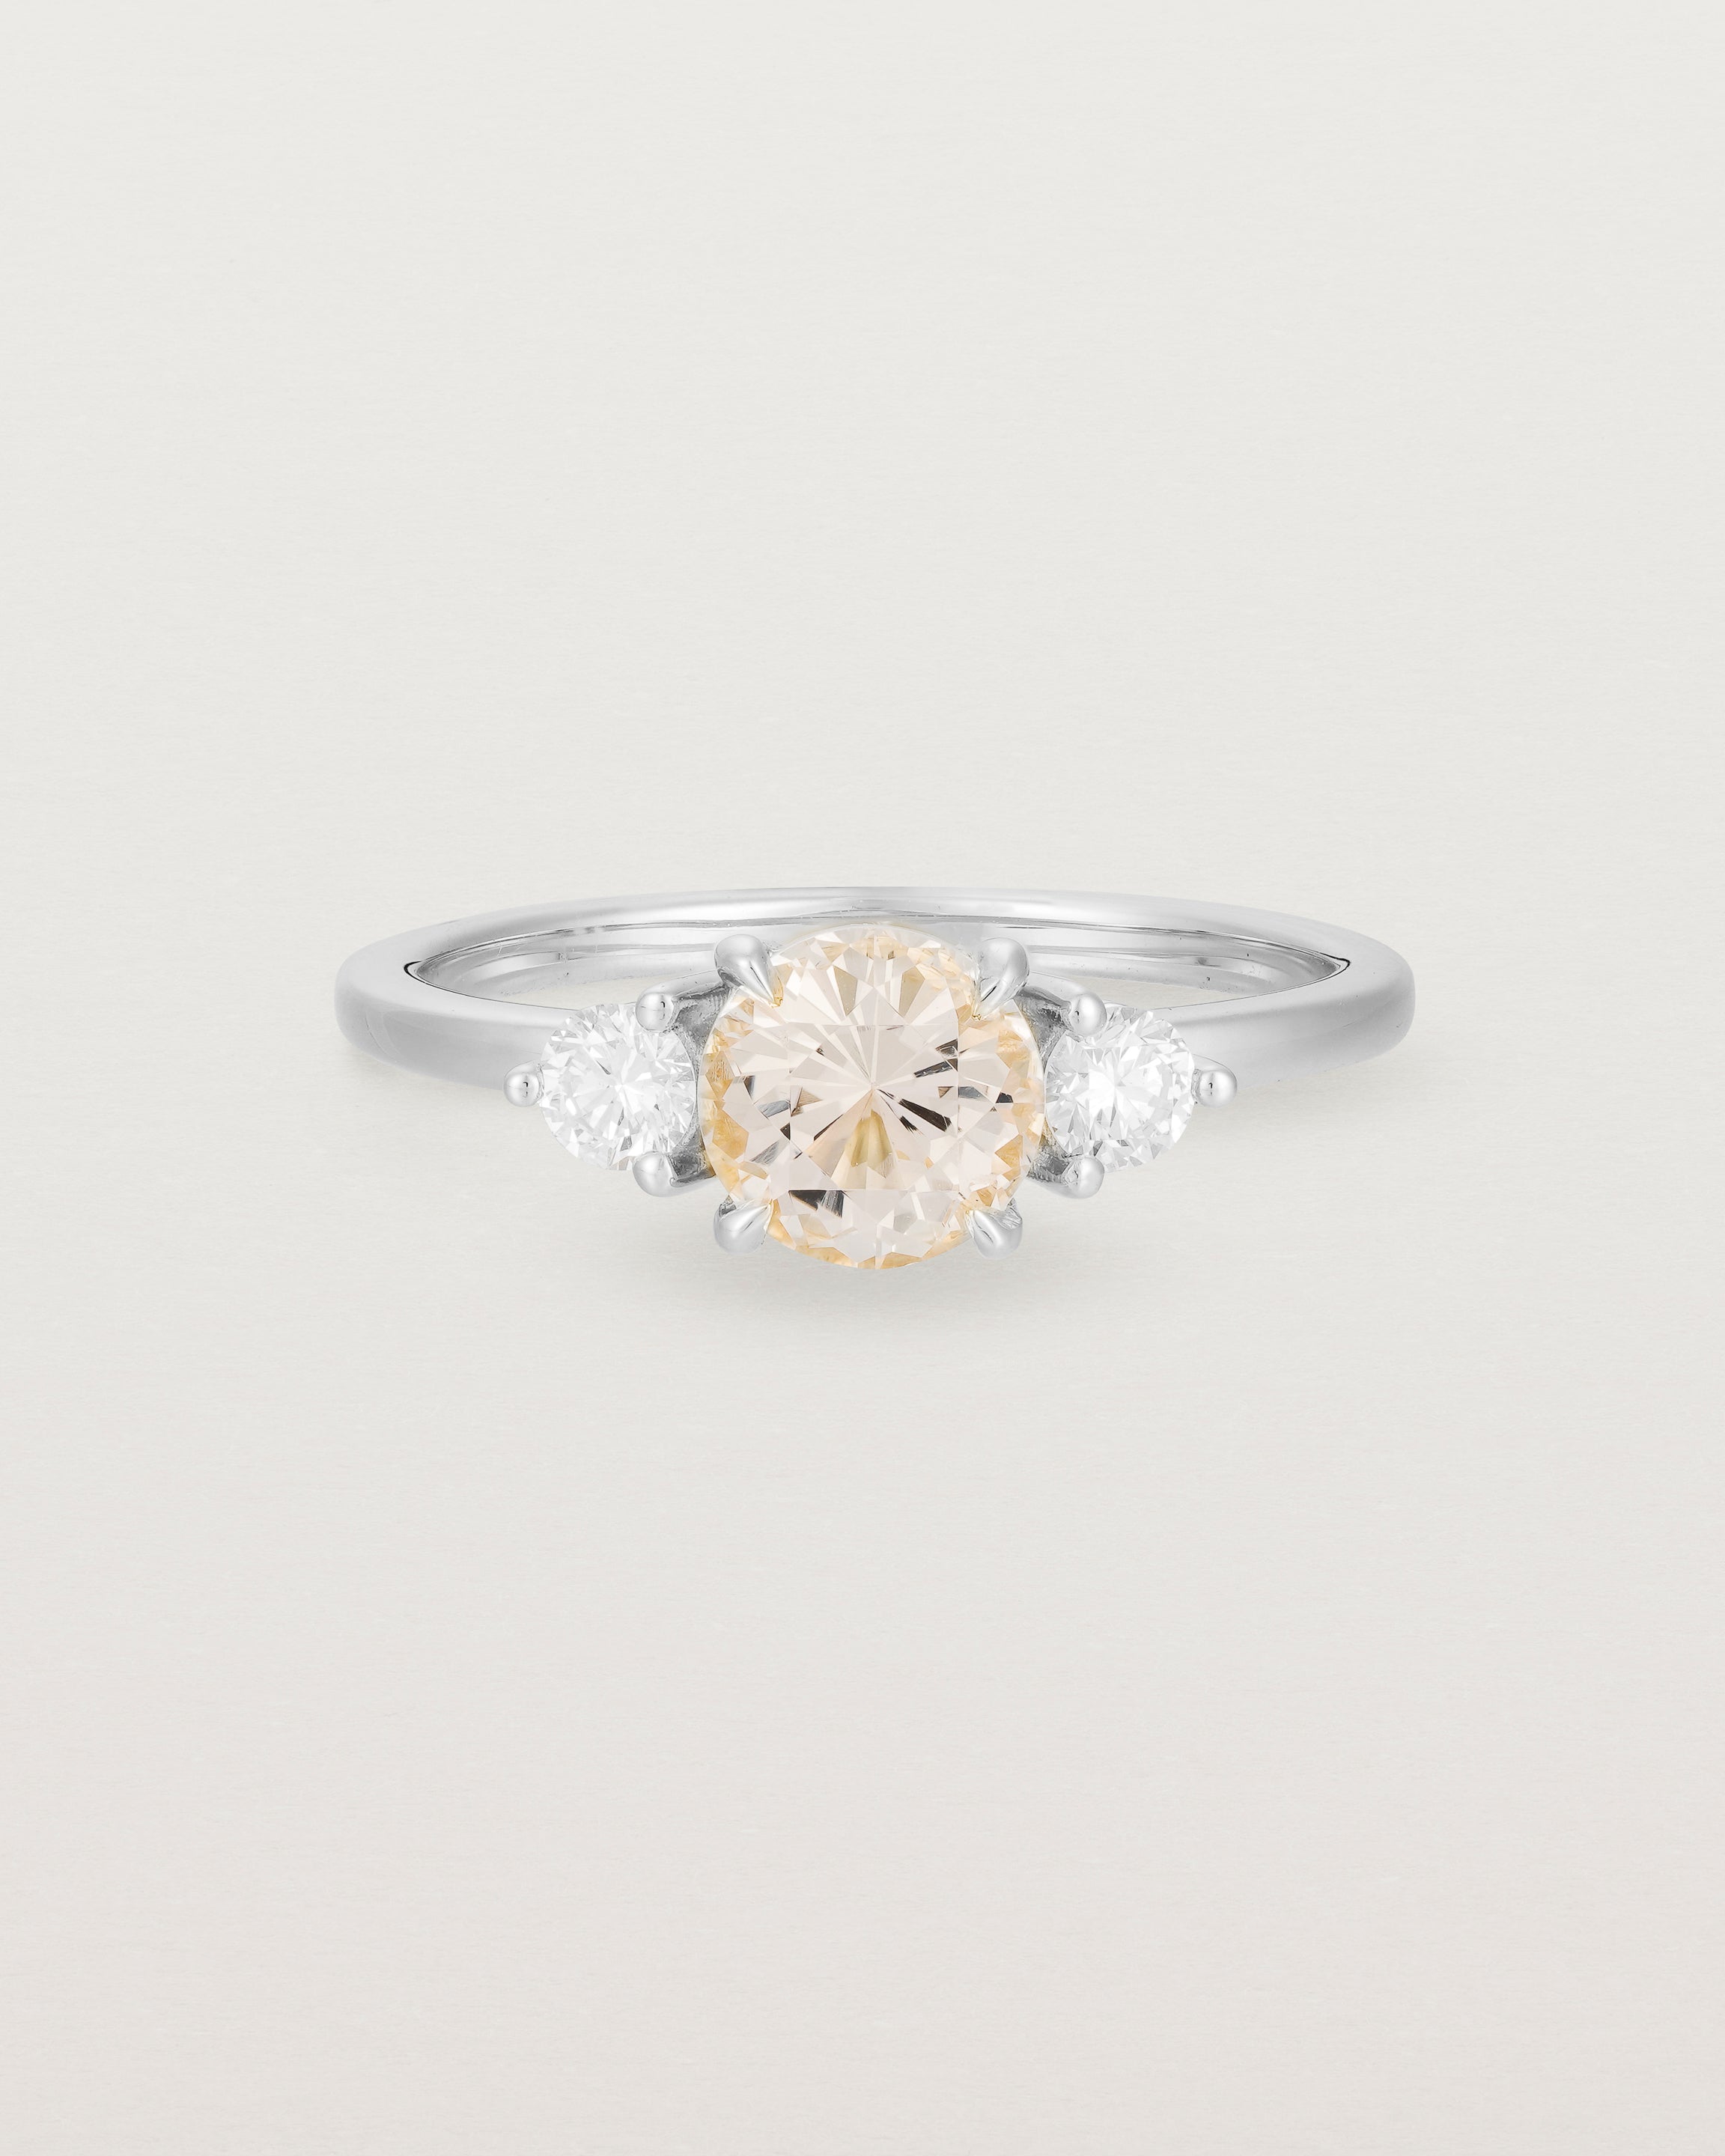 Front view of the Petite Una Round Trio Ring | Morganite & Diamonds | White Gold.